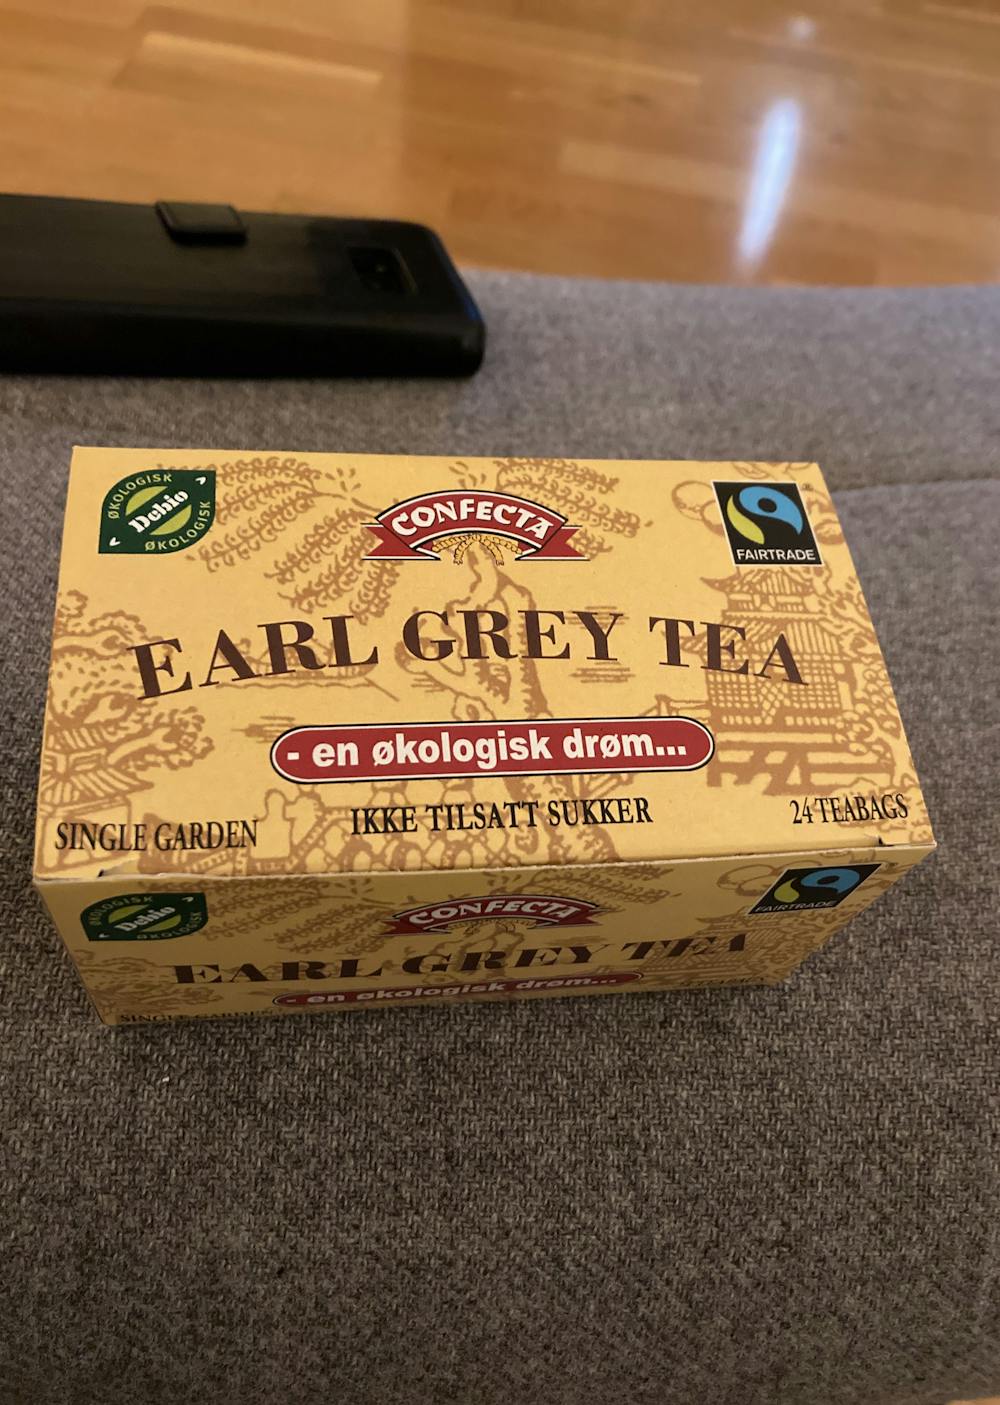 Earl grey tea, Confecta